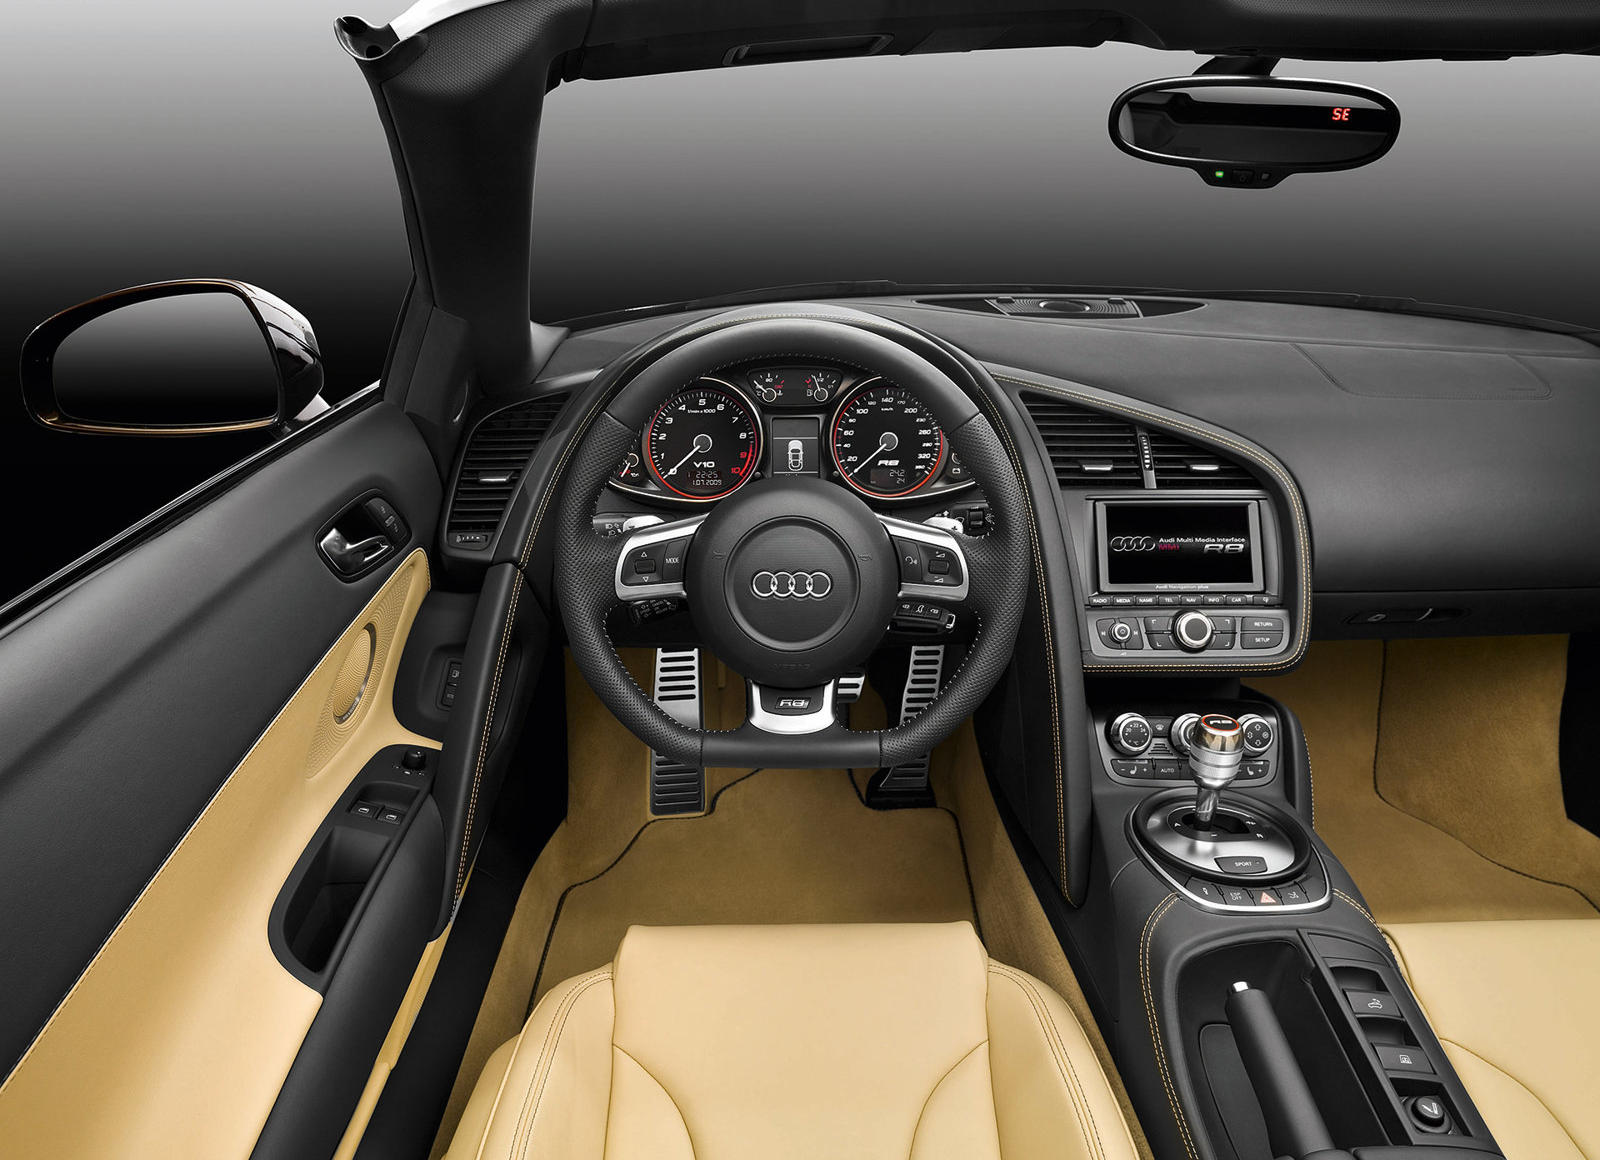 2011 Audi R8 Spyder Interior Photos | CarBuzz